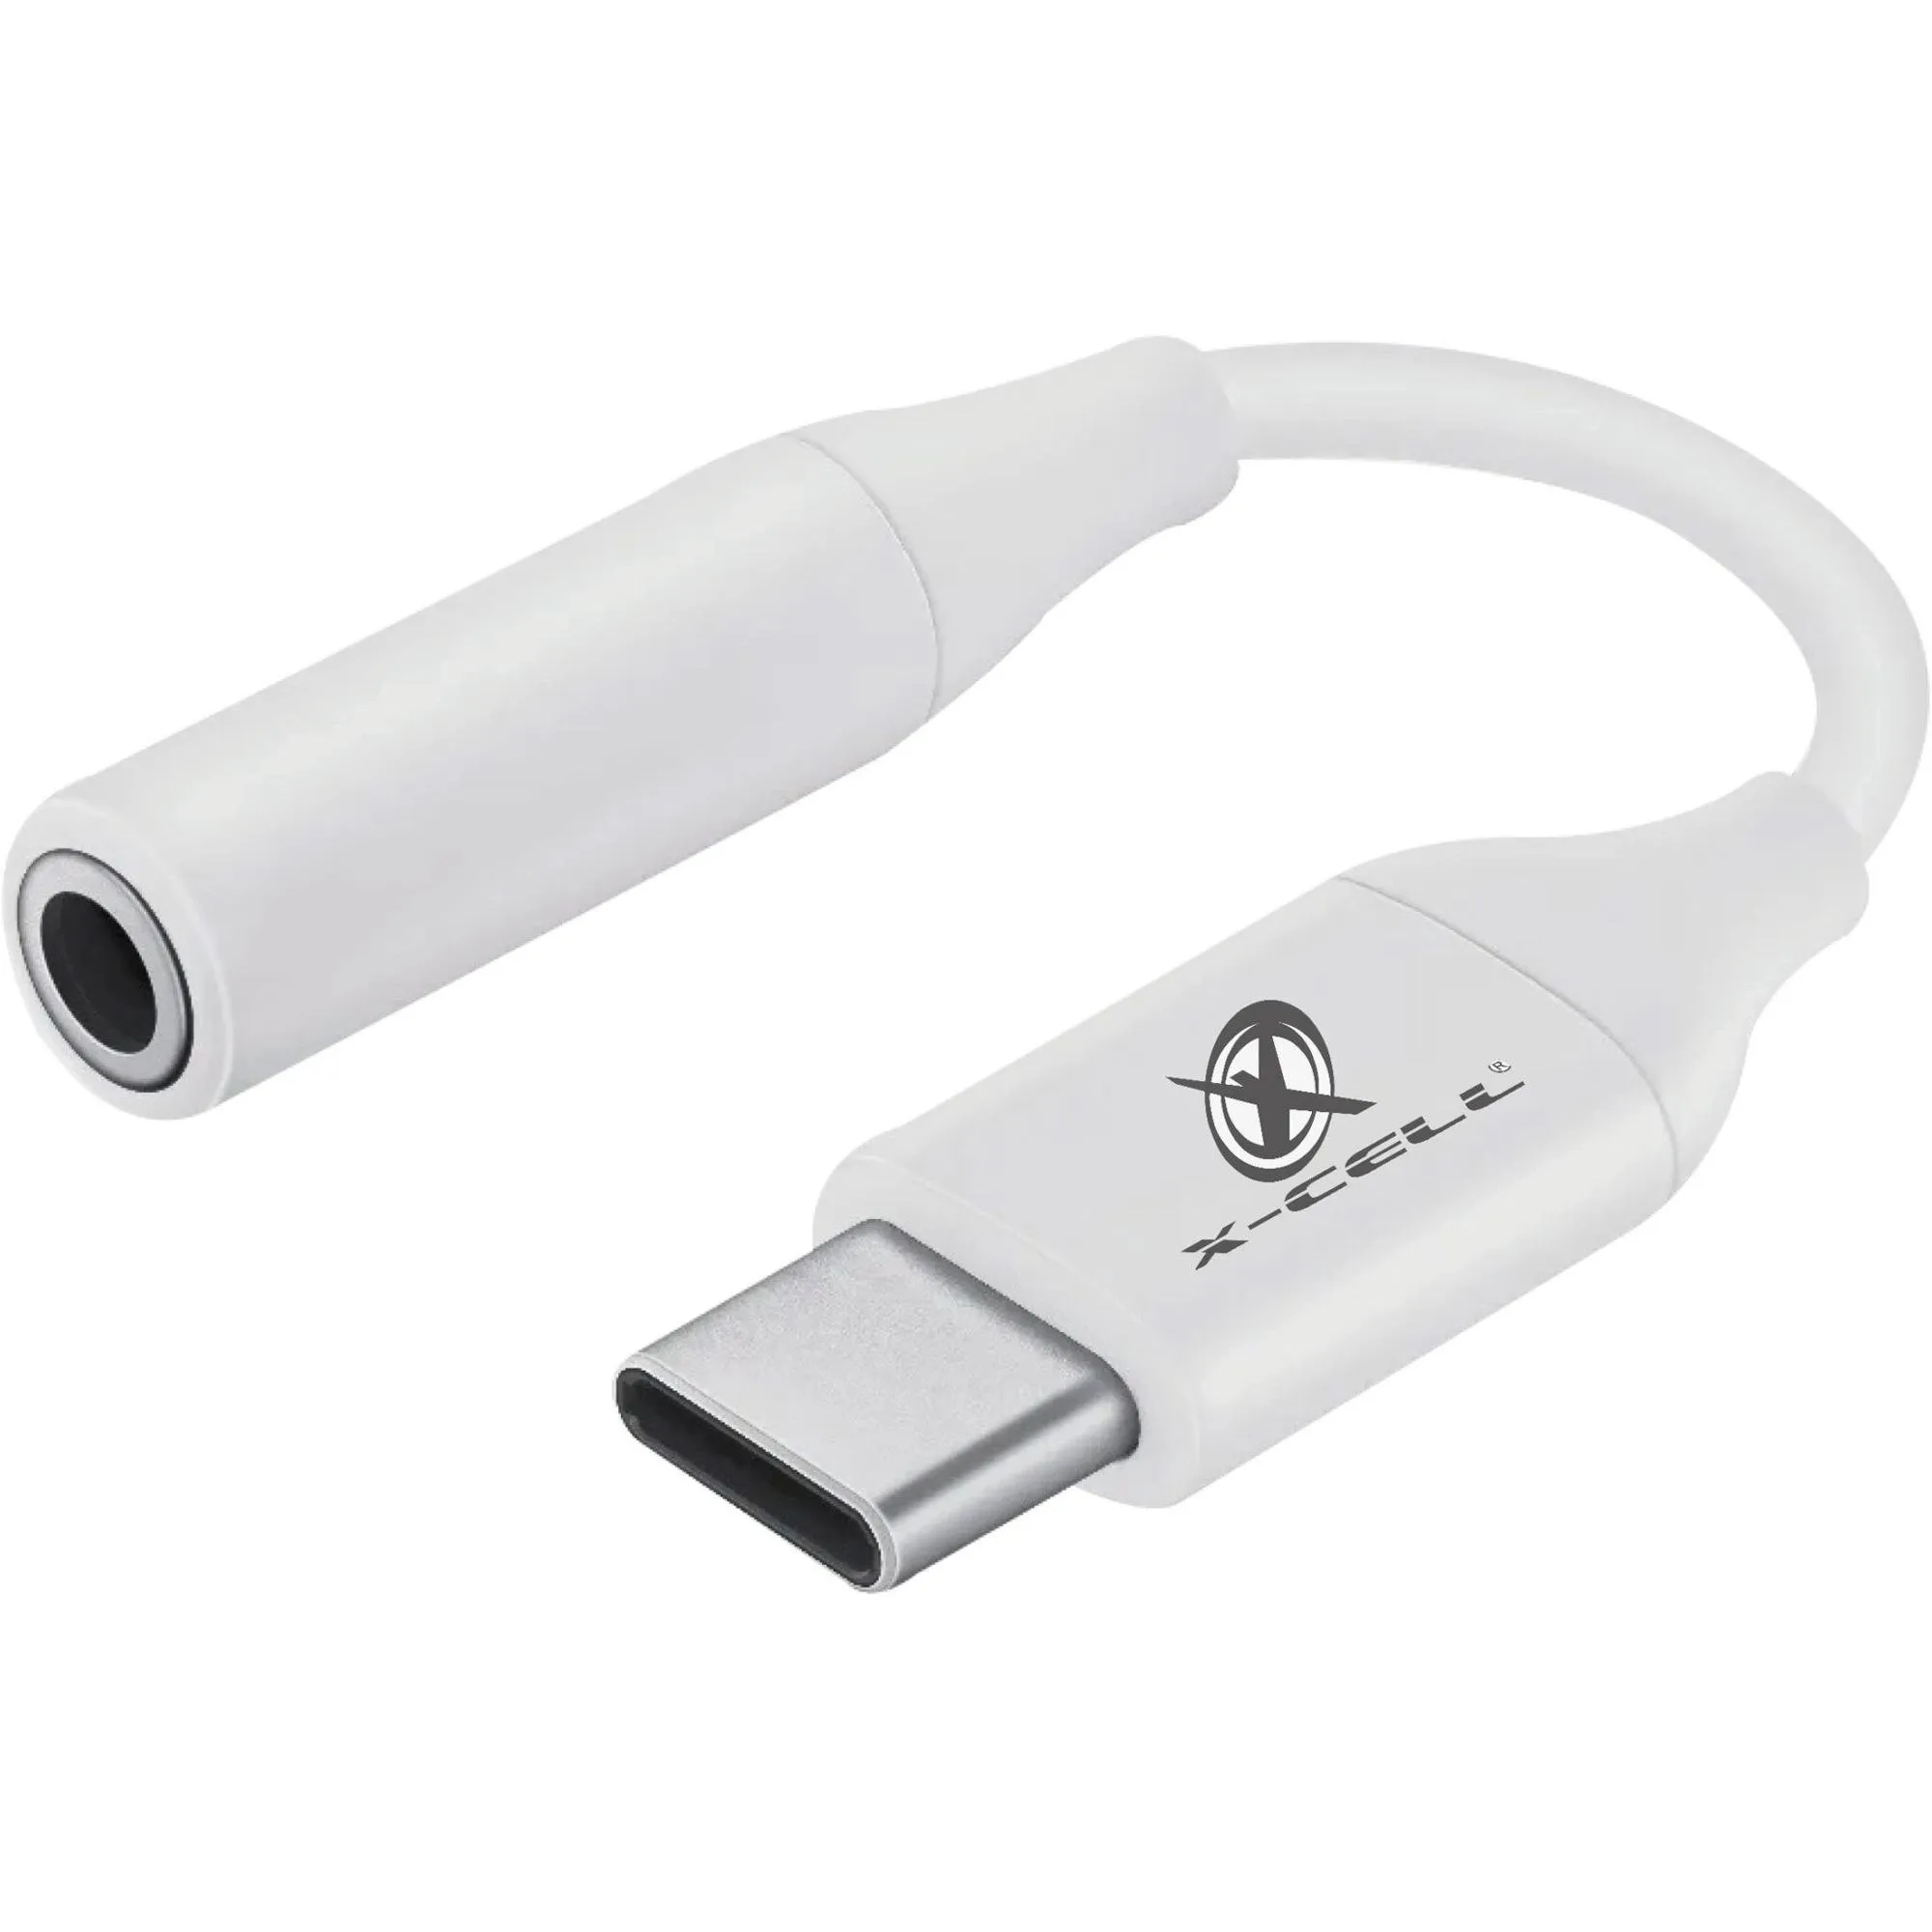 Cabo Adaptador USB-C P2 Flex Branco por 16,99 à vista no boleto/pix ou parcele em até 1x sem juros. Compre na loja Mundomax!